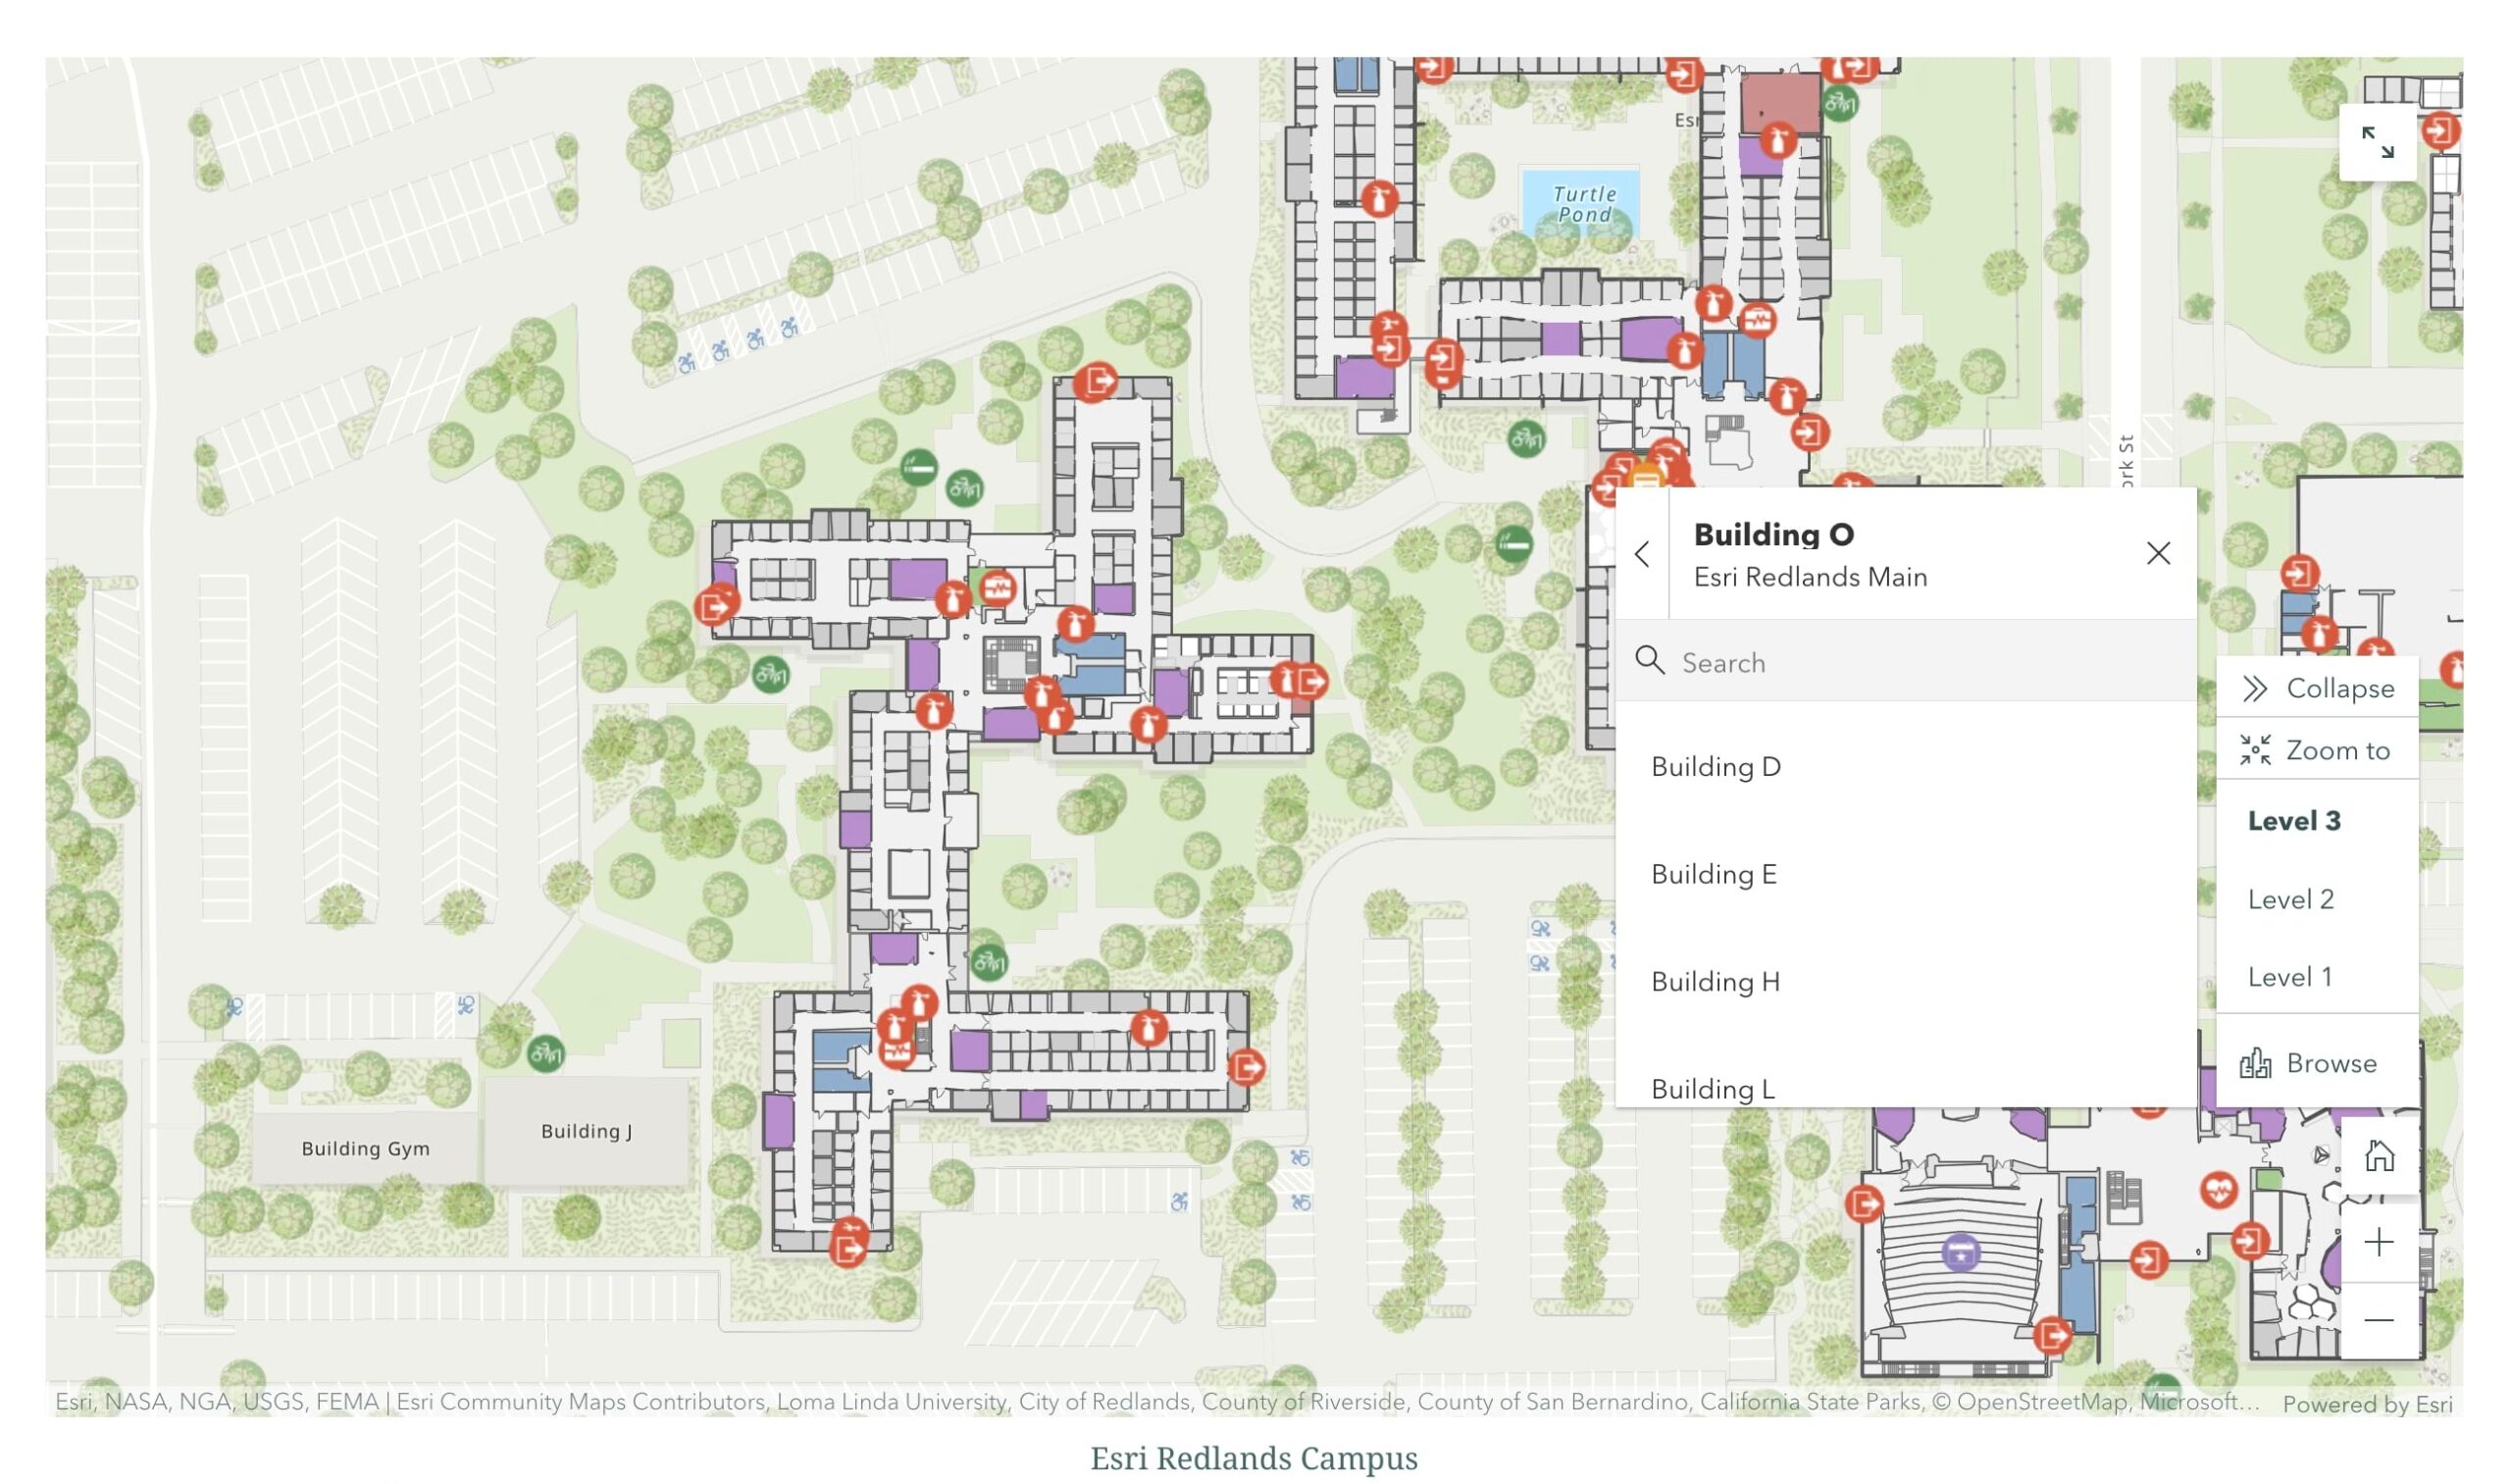 Campus map showing floor filter widget